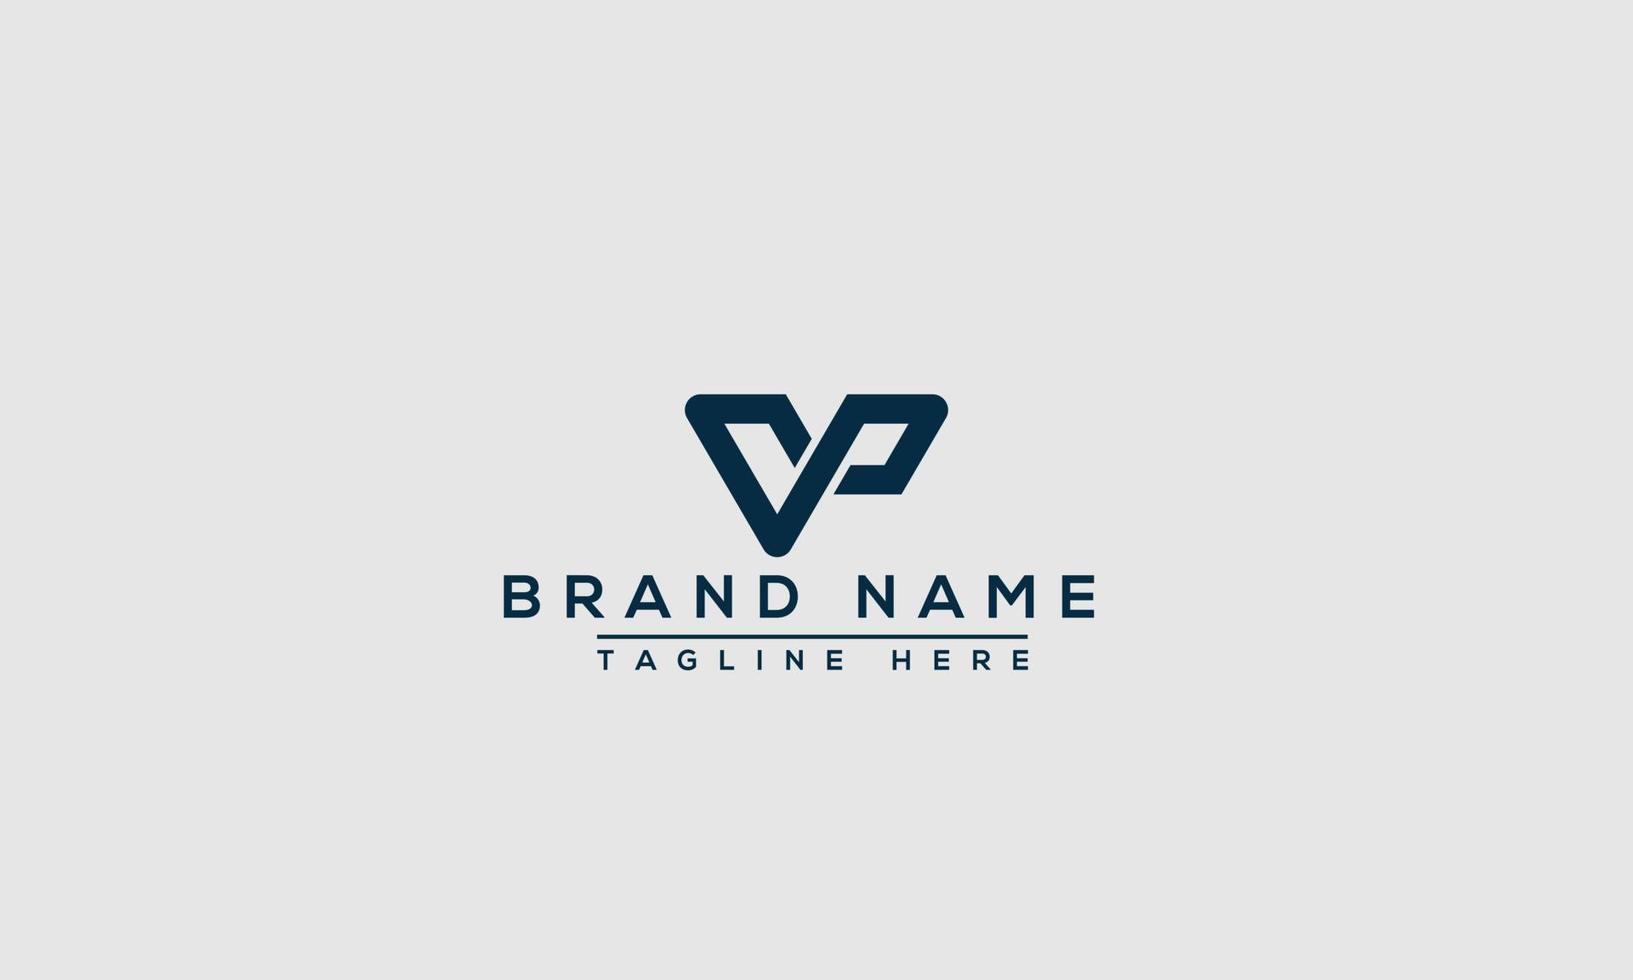 elemento de marca gráfico vectorial de plantilla de diseño de logotipo vp. vector